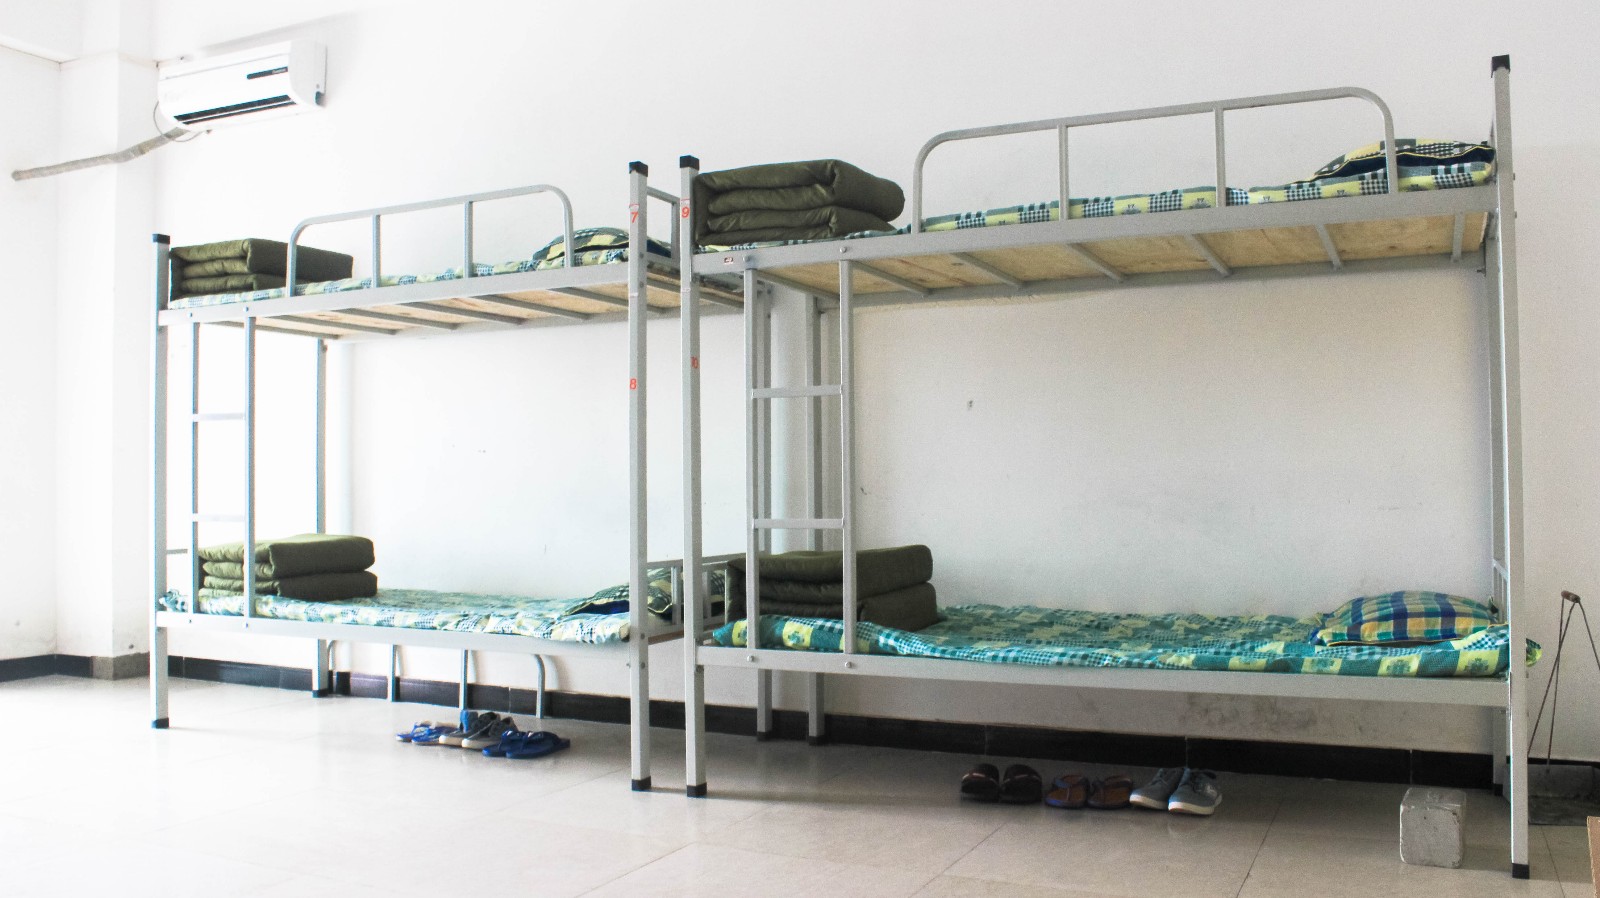 吉林省畜牧业学校宿舍环境、寝室环境